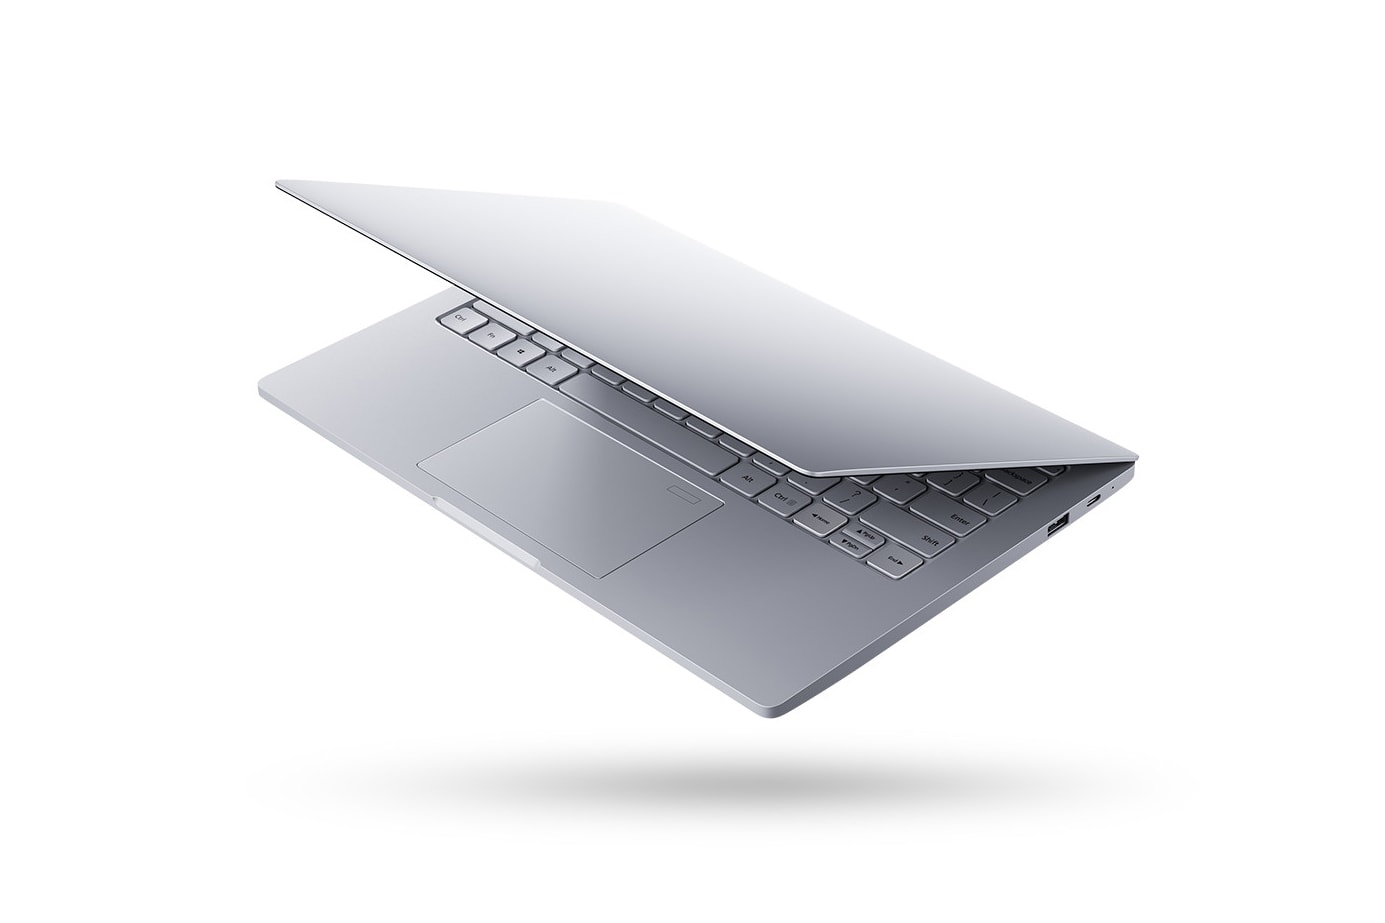 小米發佈新款 13.3 寸 Air 筆記本電腦